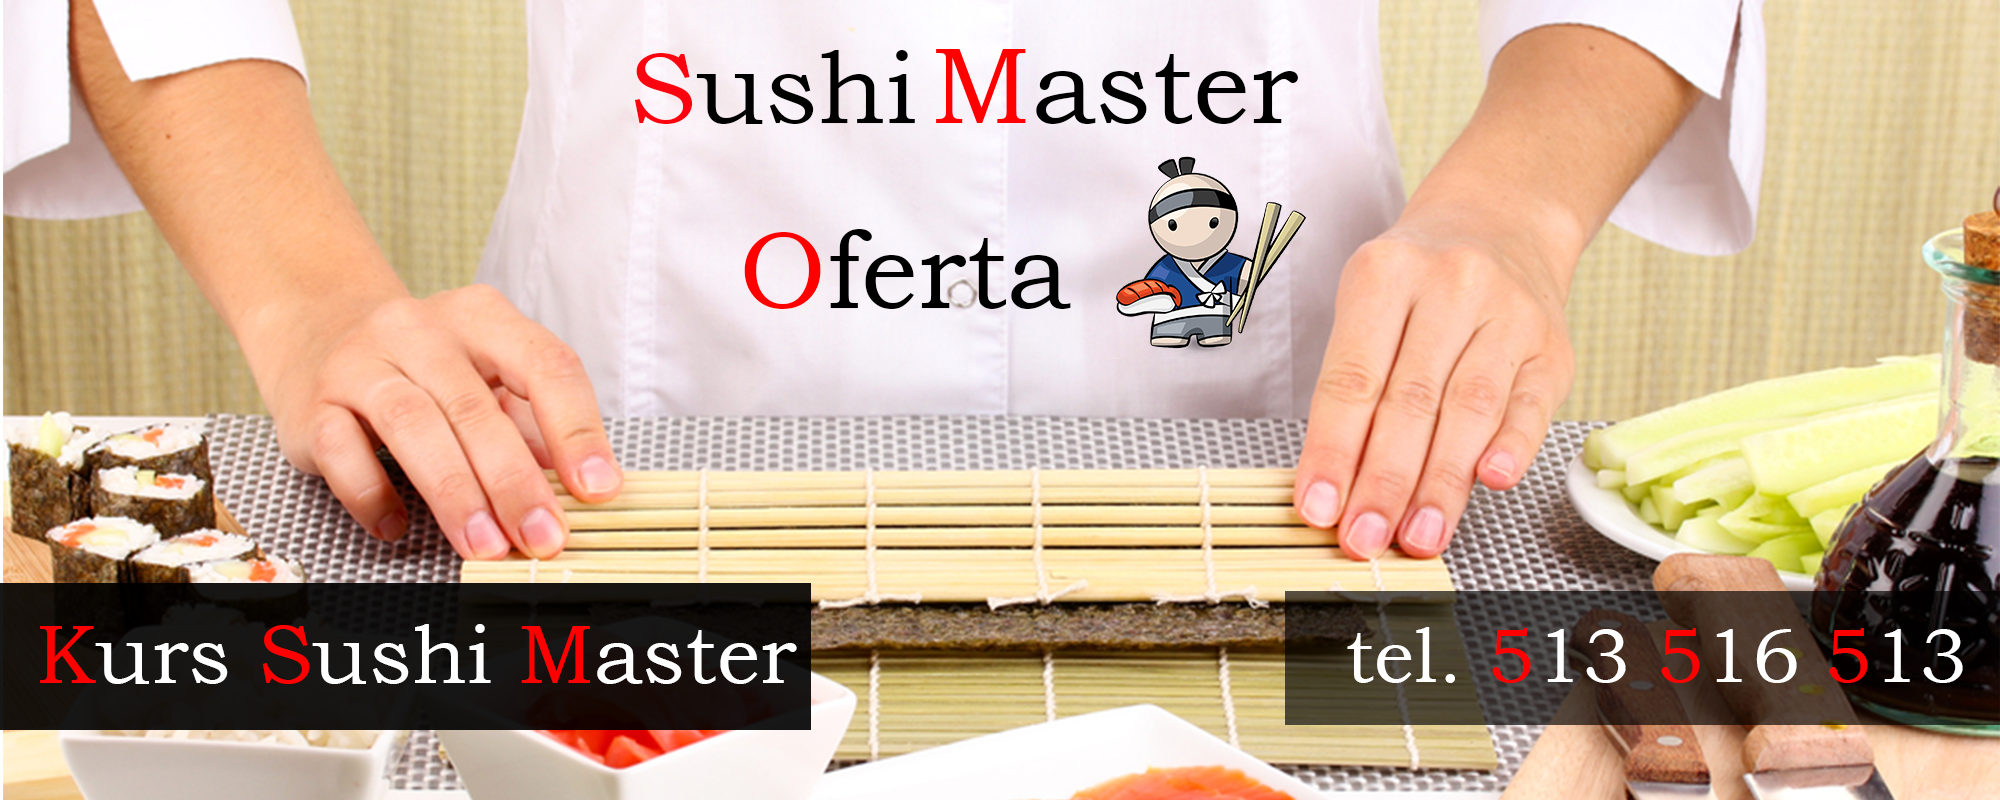 Kurs Sushi Master, Szkolenia Sushi, Nauka Zawodu Sushi Master, Master Chief, Master Szef, Sushi Man, Sushi Men, Warsztaty Sushi, Kursy Sushi, Praktyki Sushi